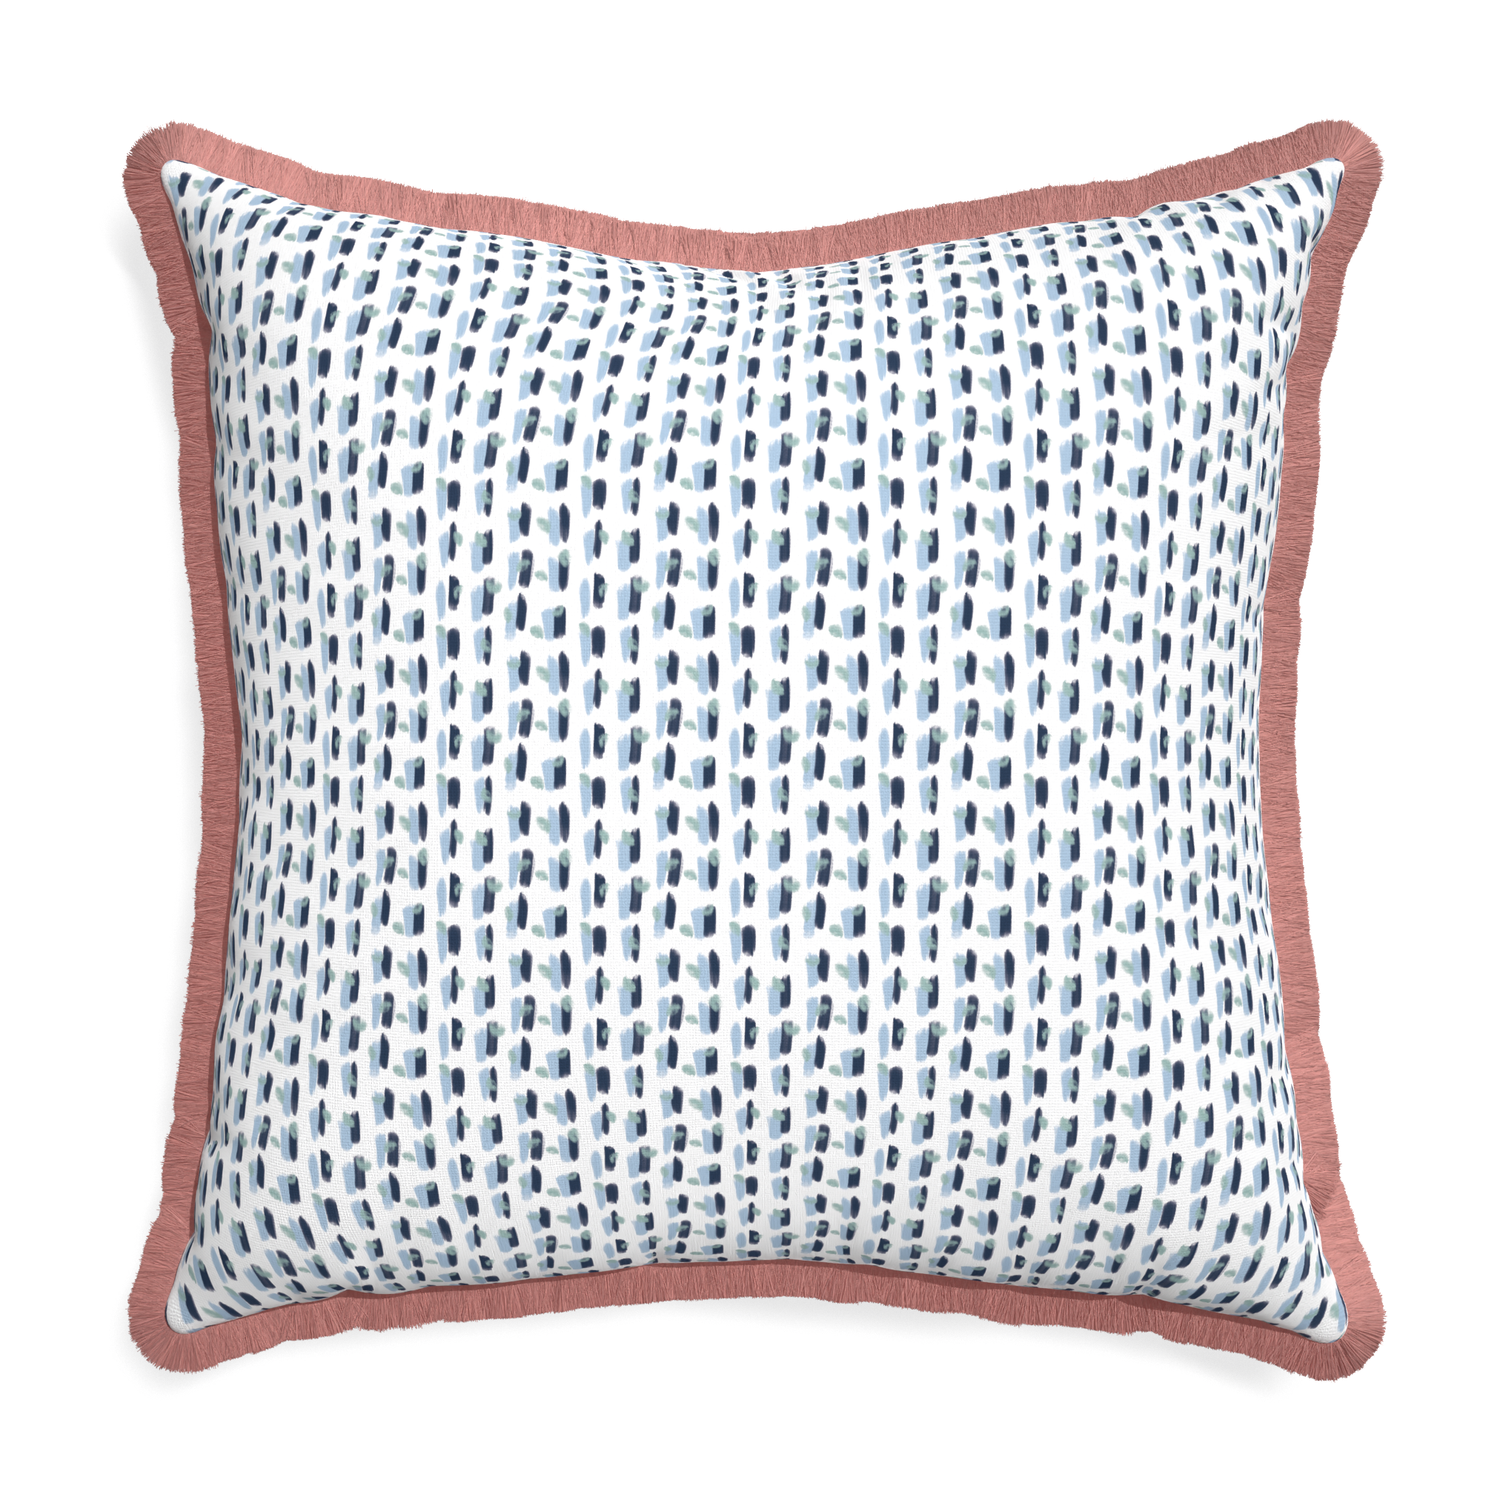 Euro-sham poppy blue custom pillow with d fringe on white background